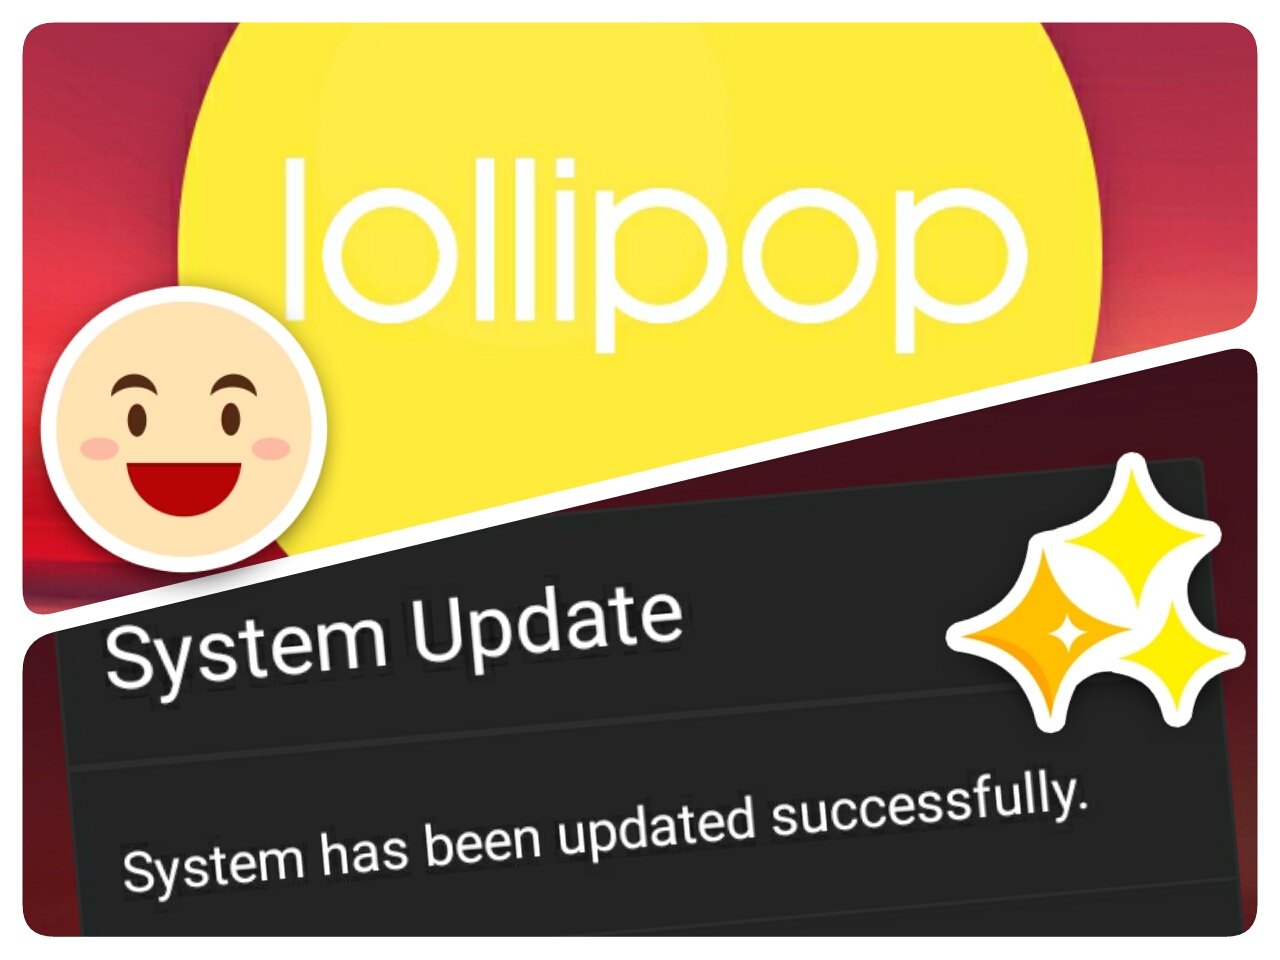 Asus zenfone 5 16gb lollipop update